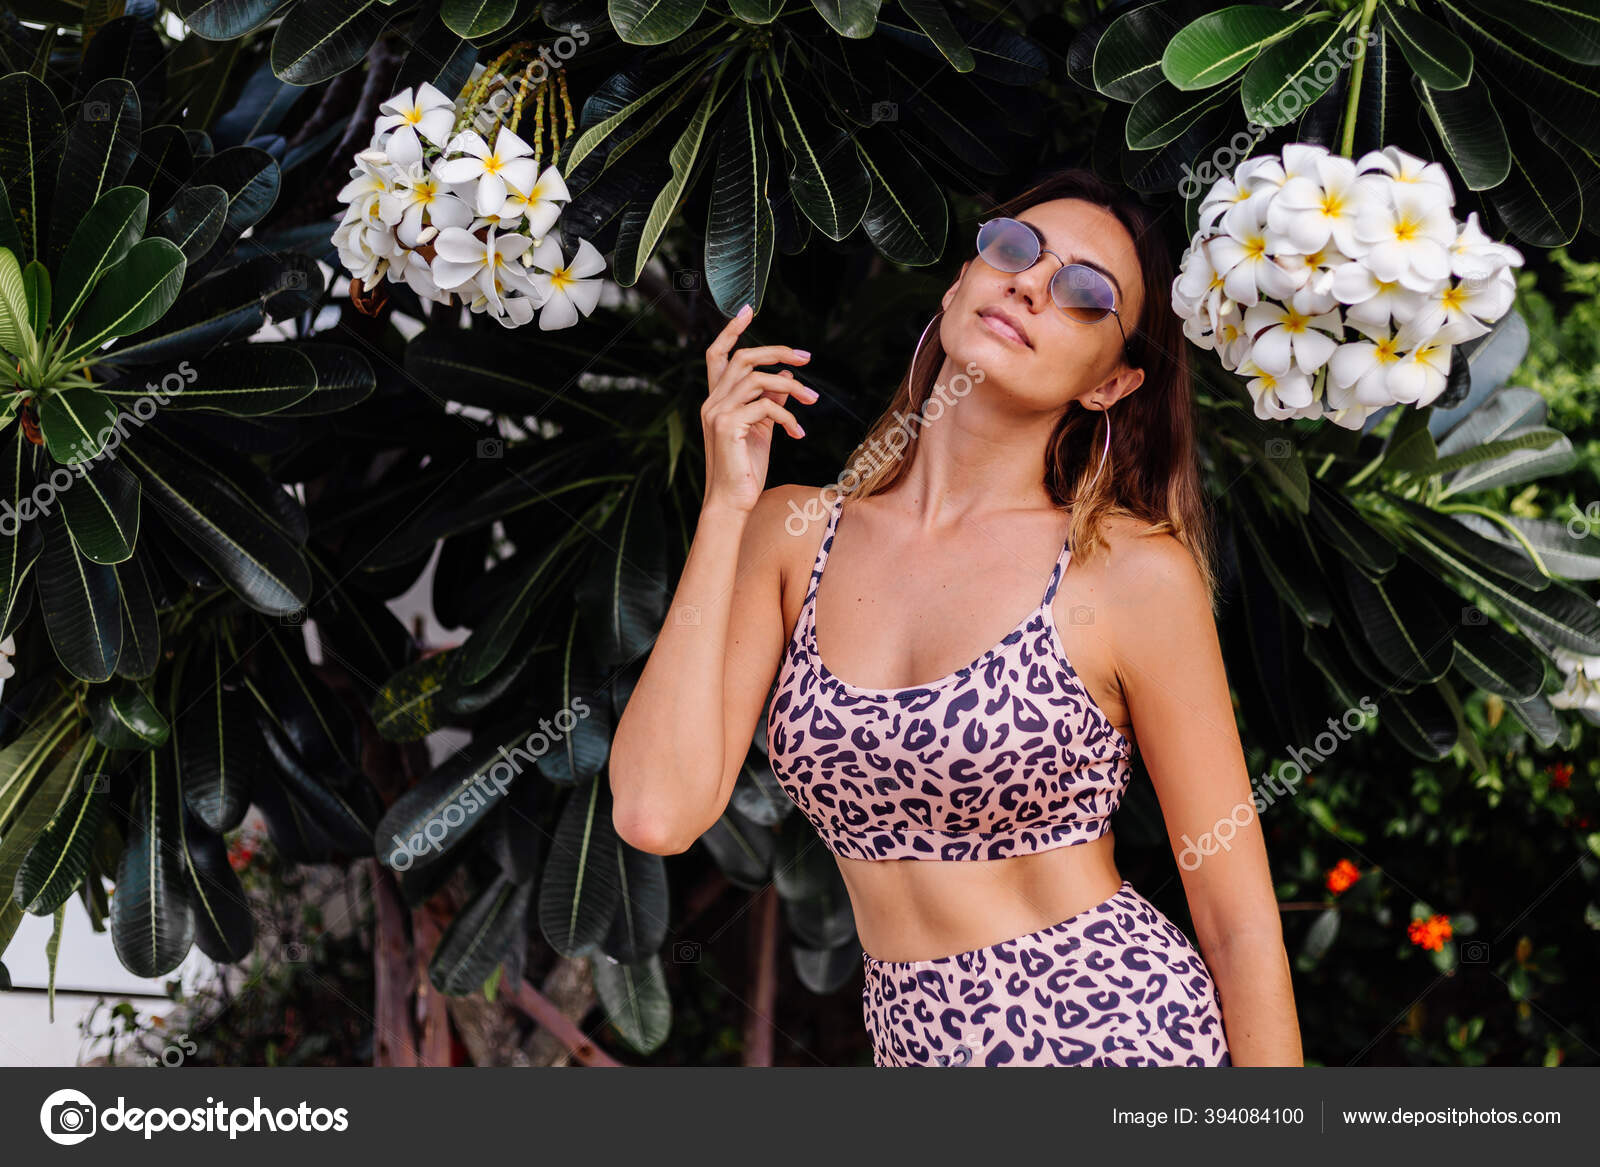 Casi horno Registro Ajuste Europeo Elegante Mujer Gafas Sol Con Top Leopardo Pantalones:  fotografía de stock © kroshka_nastya #394084100 | Depositphotos